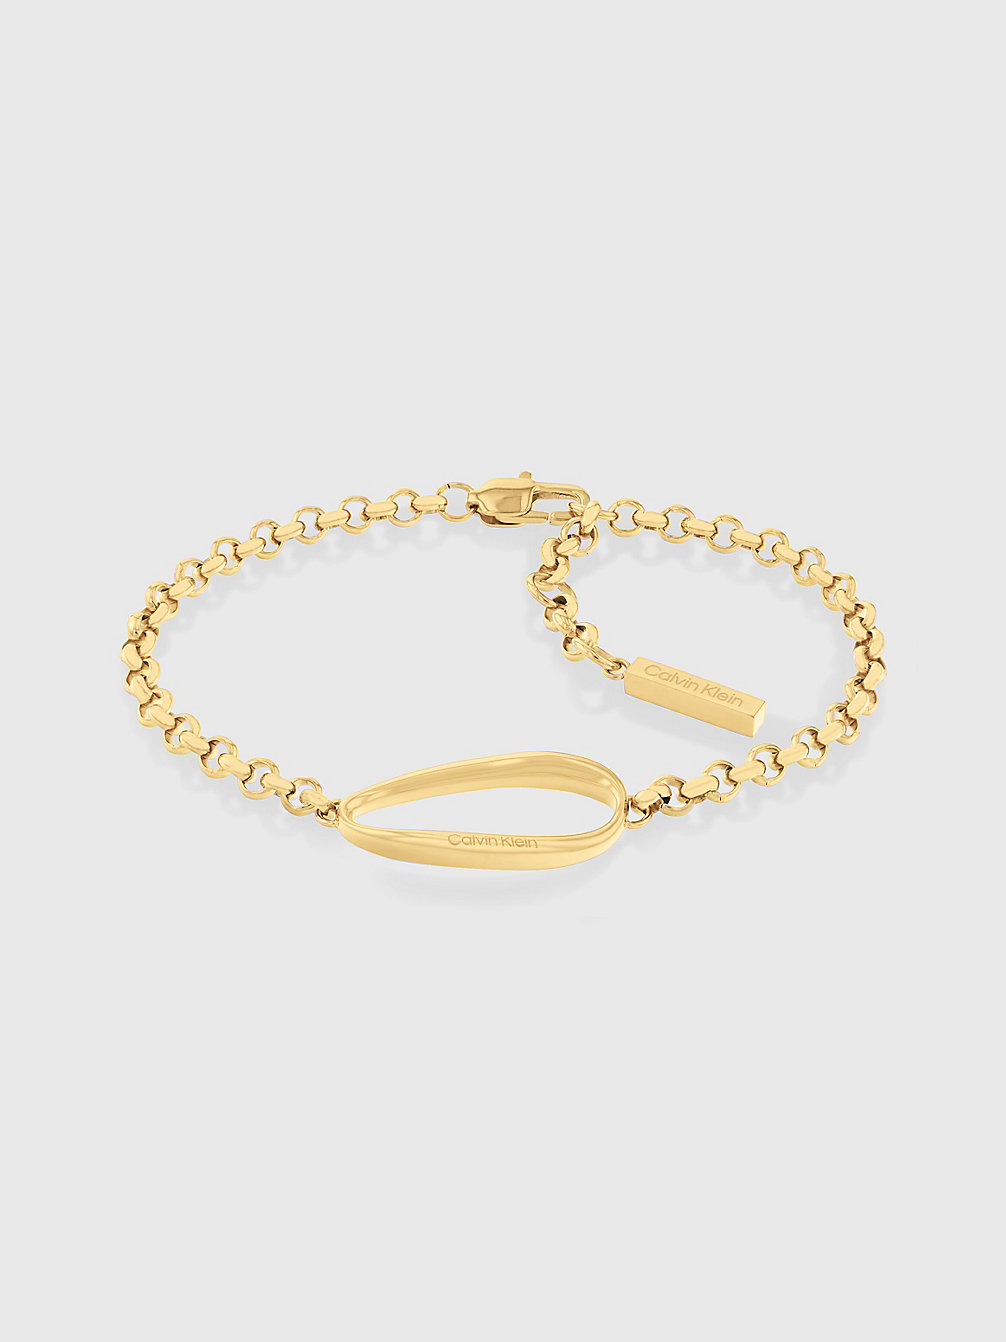 GOLD Bracelet - Playful Organic Shapes undefined femmes Calvin Klein